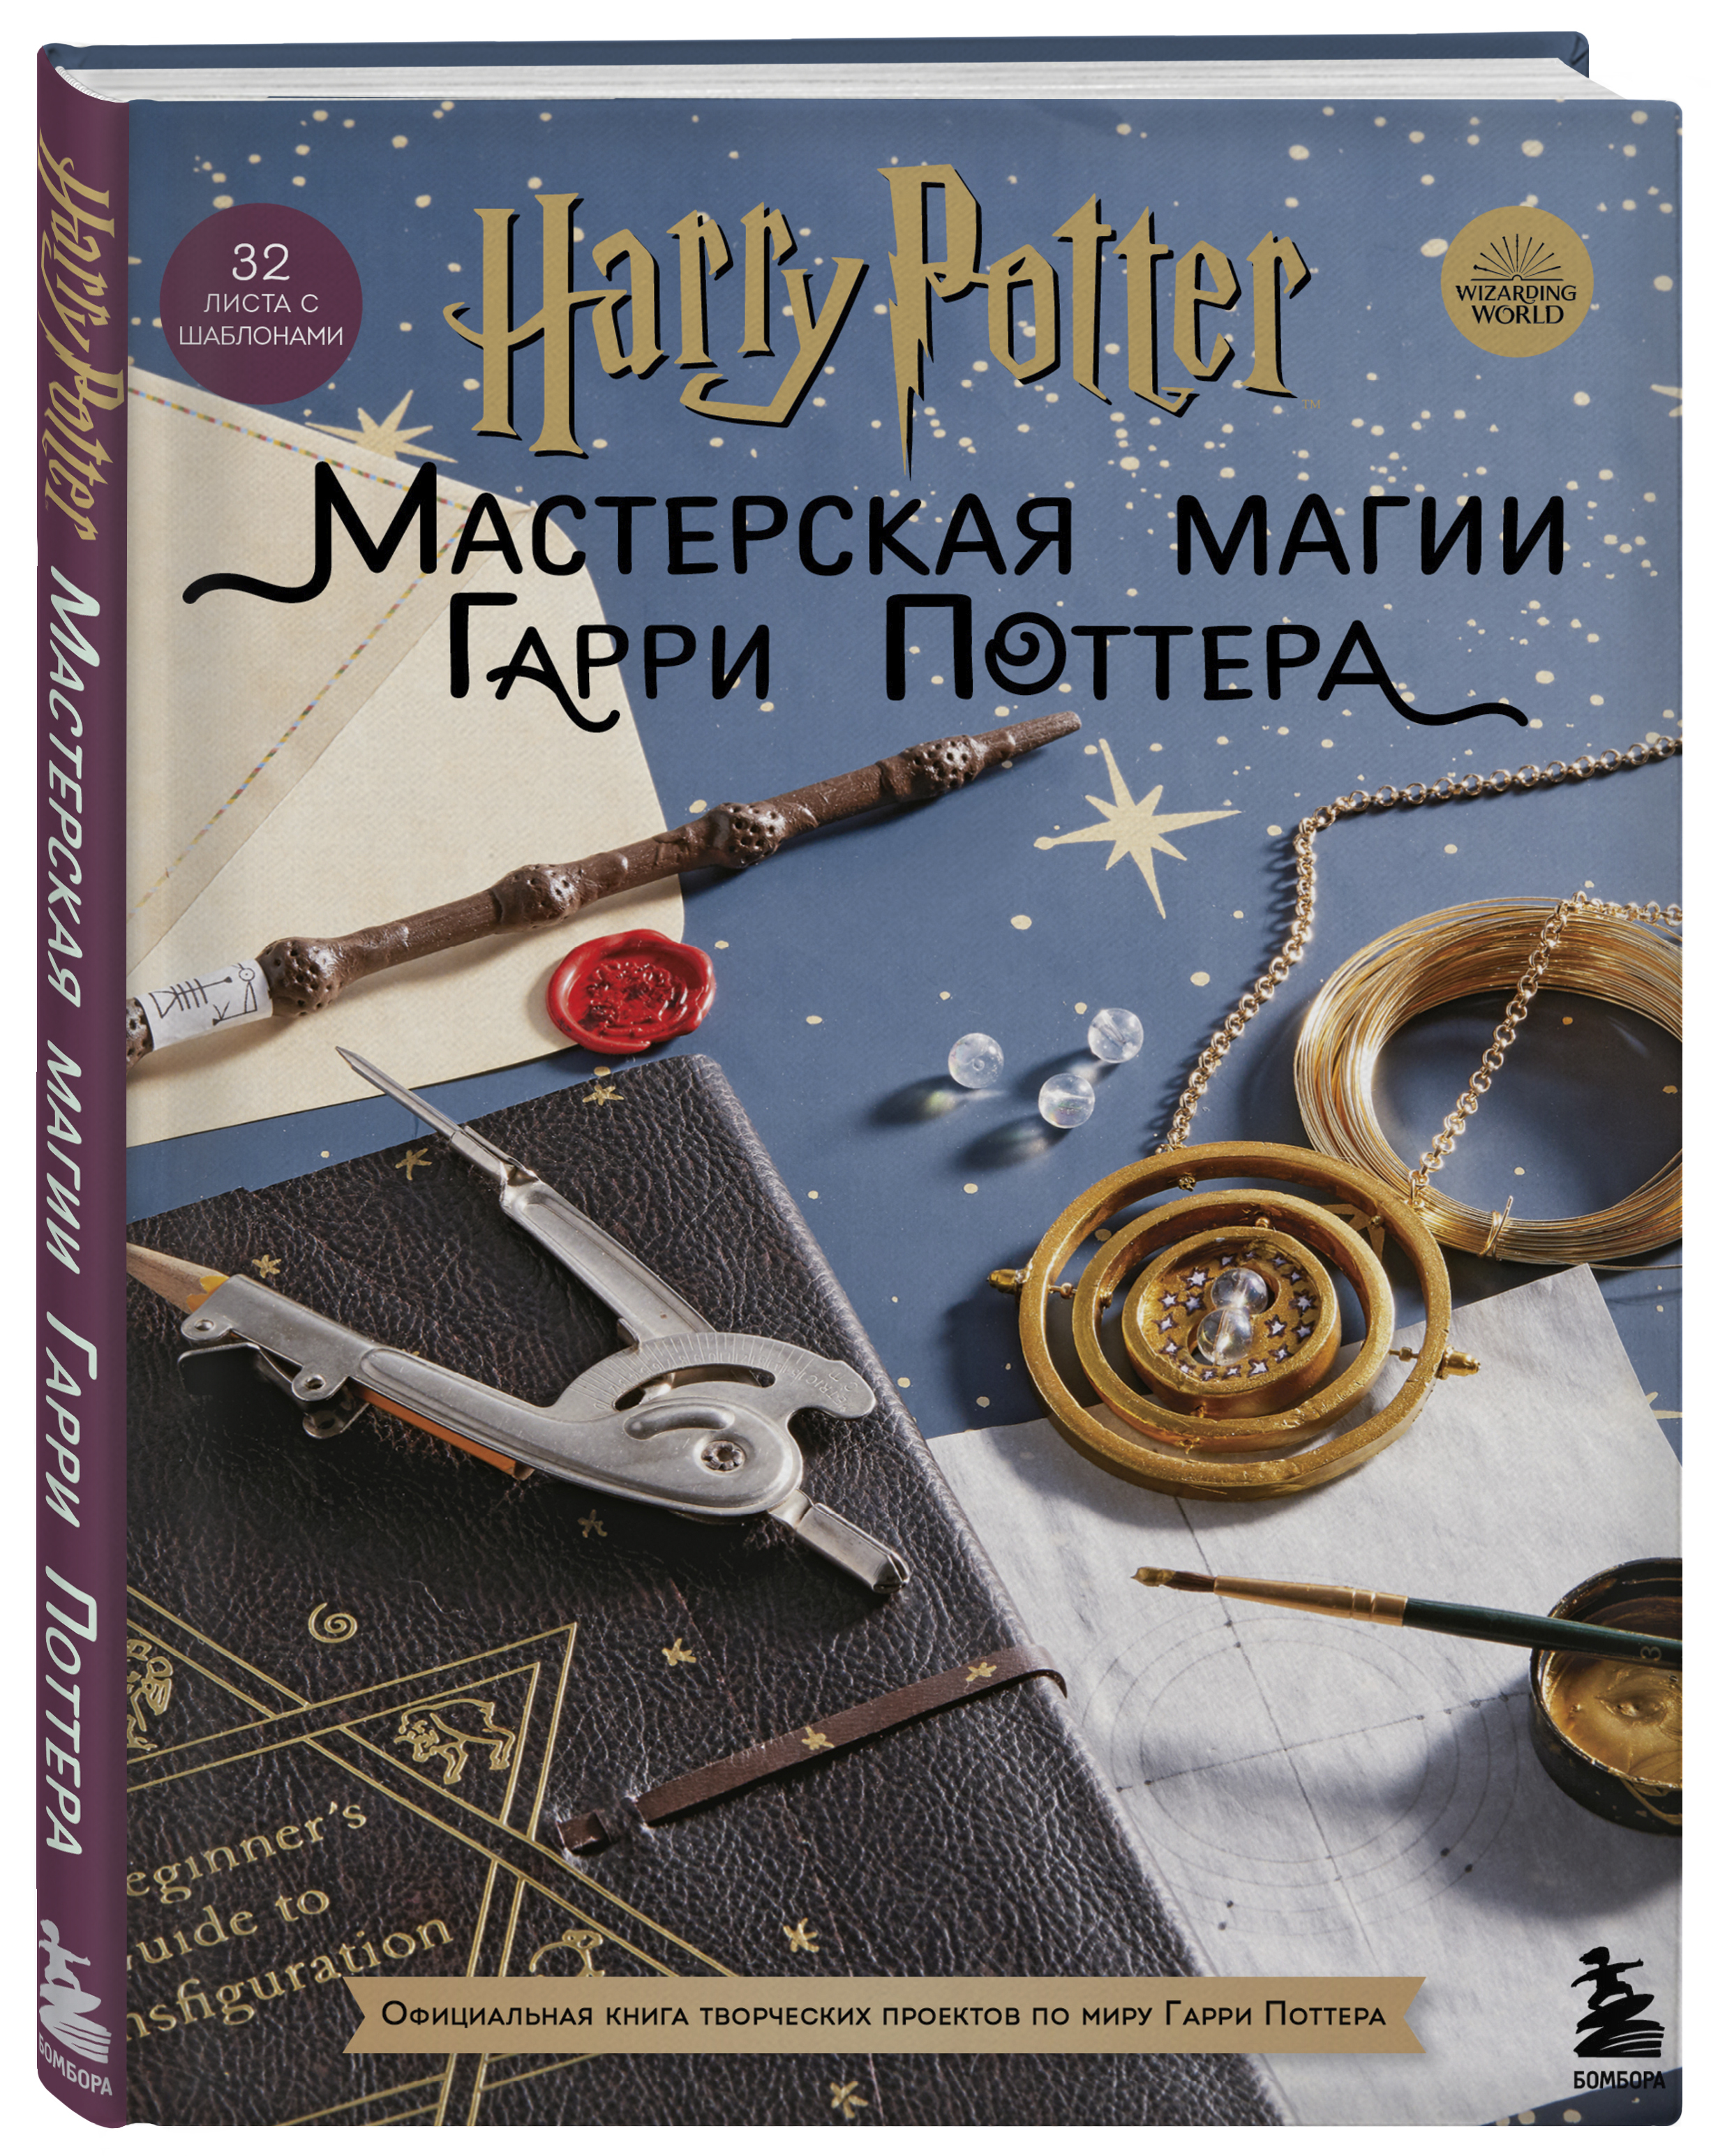 Гарри Поттер - поделки | ВКонтакте